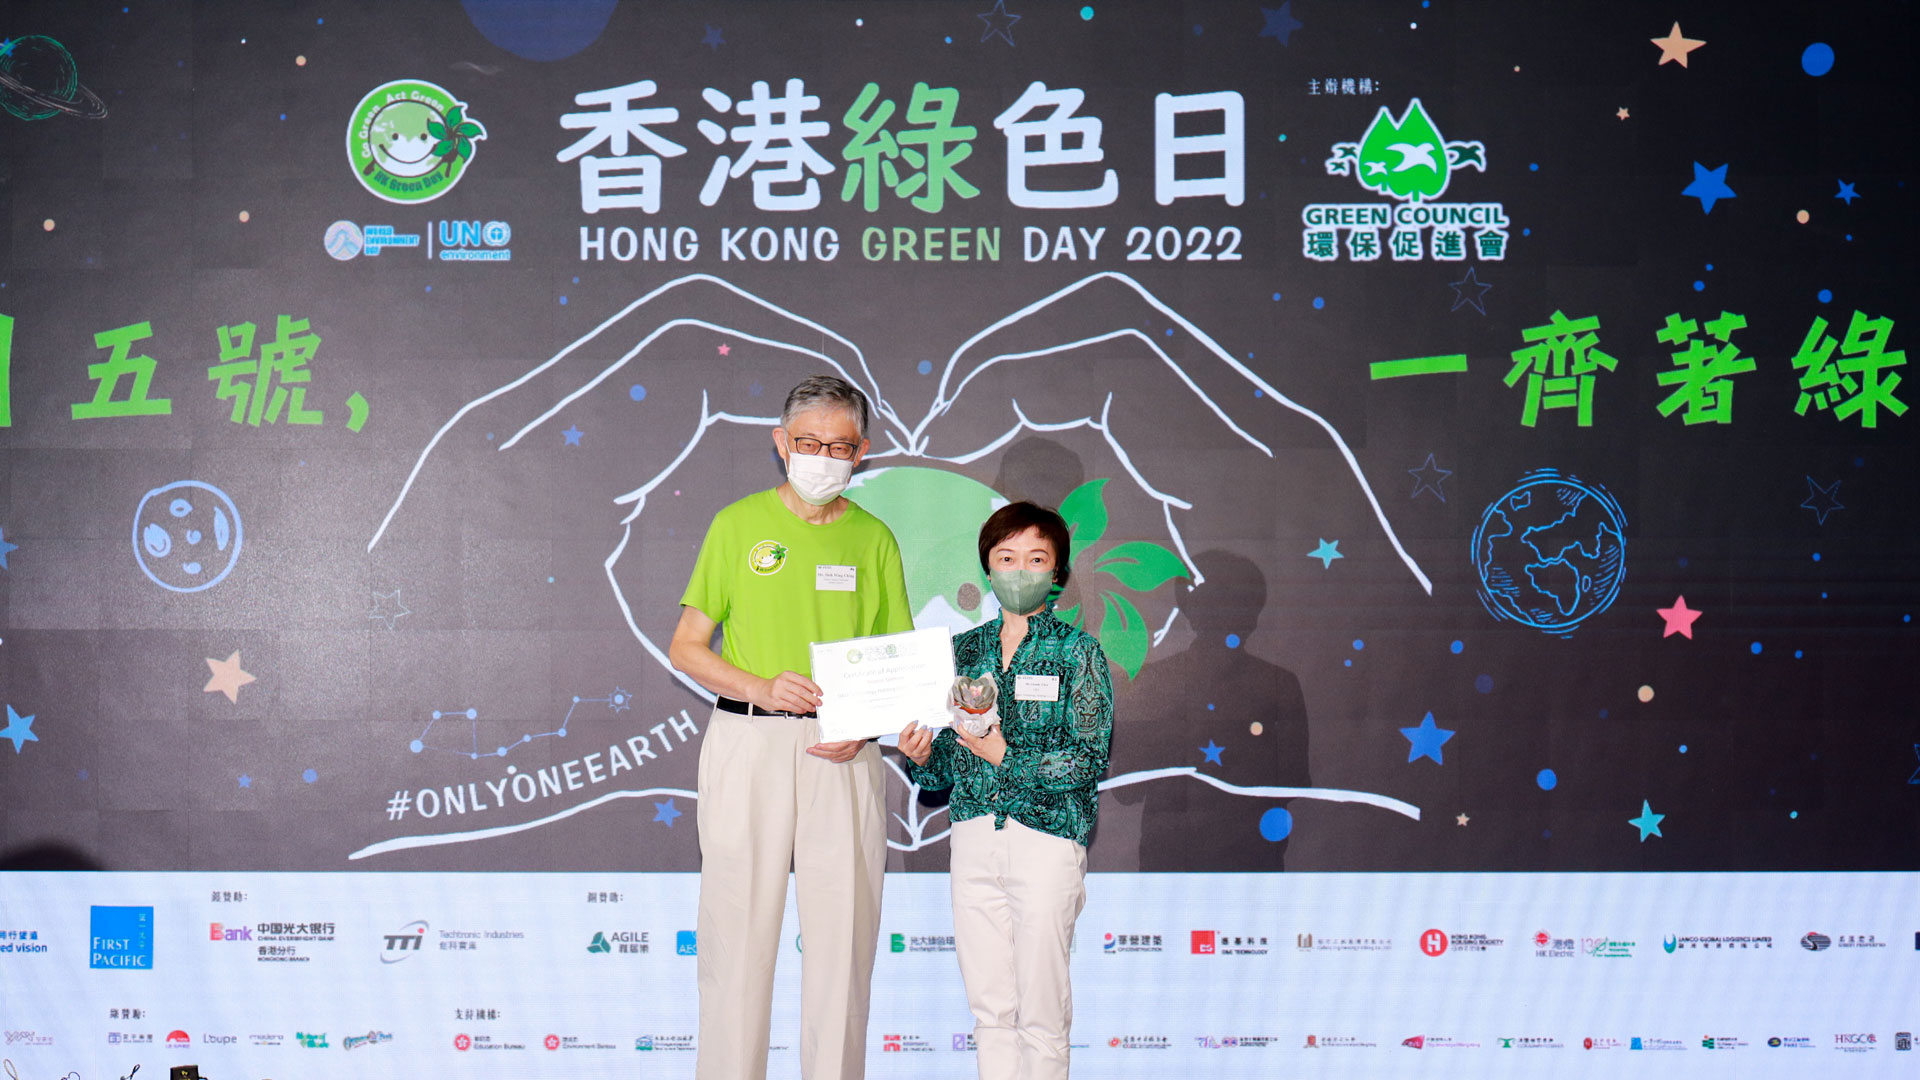 德基科技支持香港綠色日2022及世界環境日